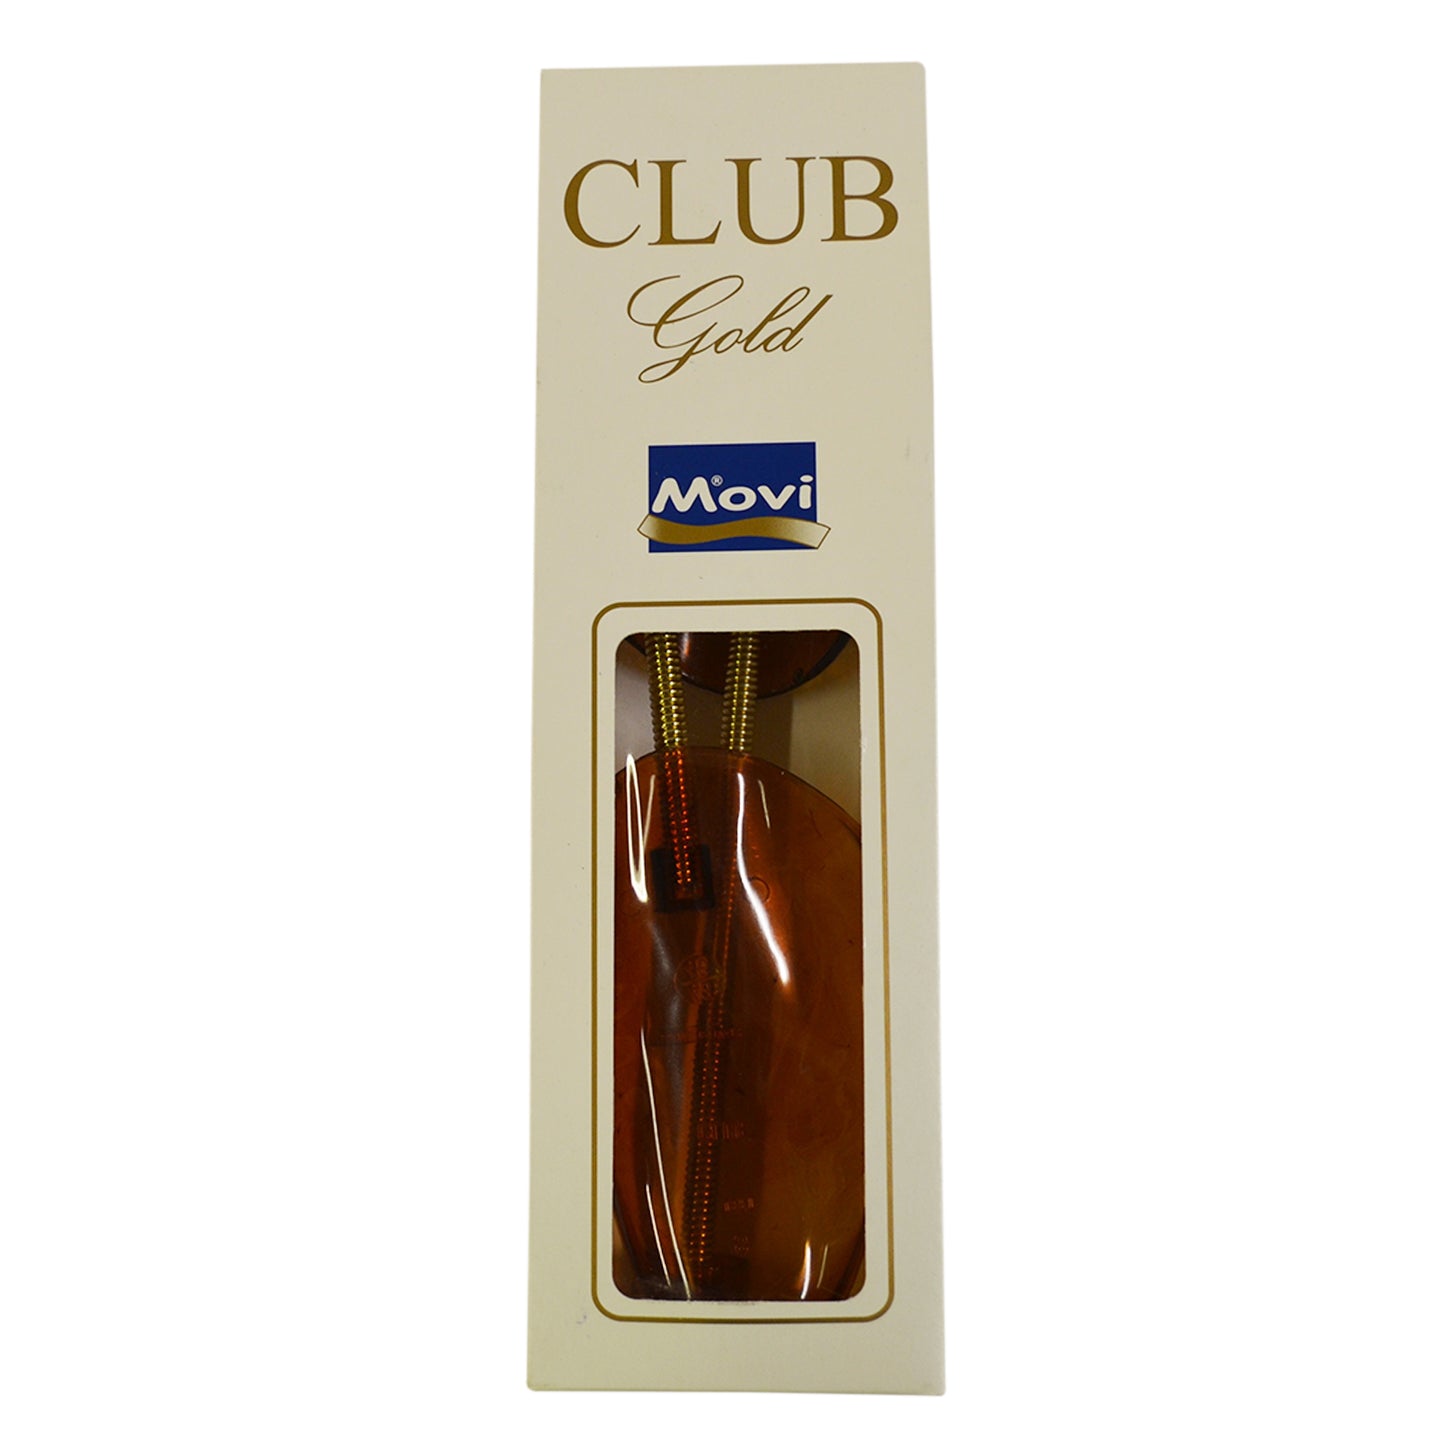 Movi Club Gold Shoe Tree MENS